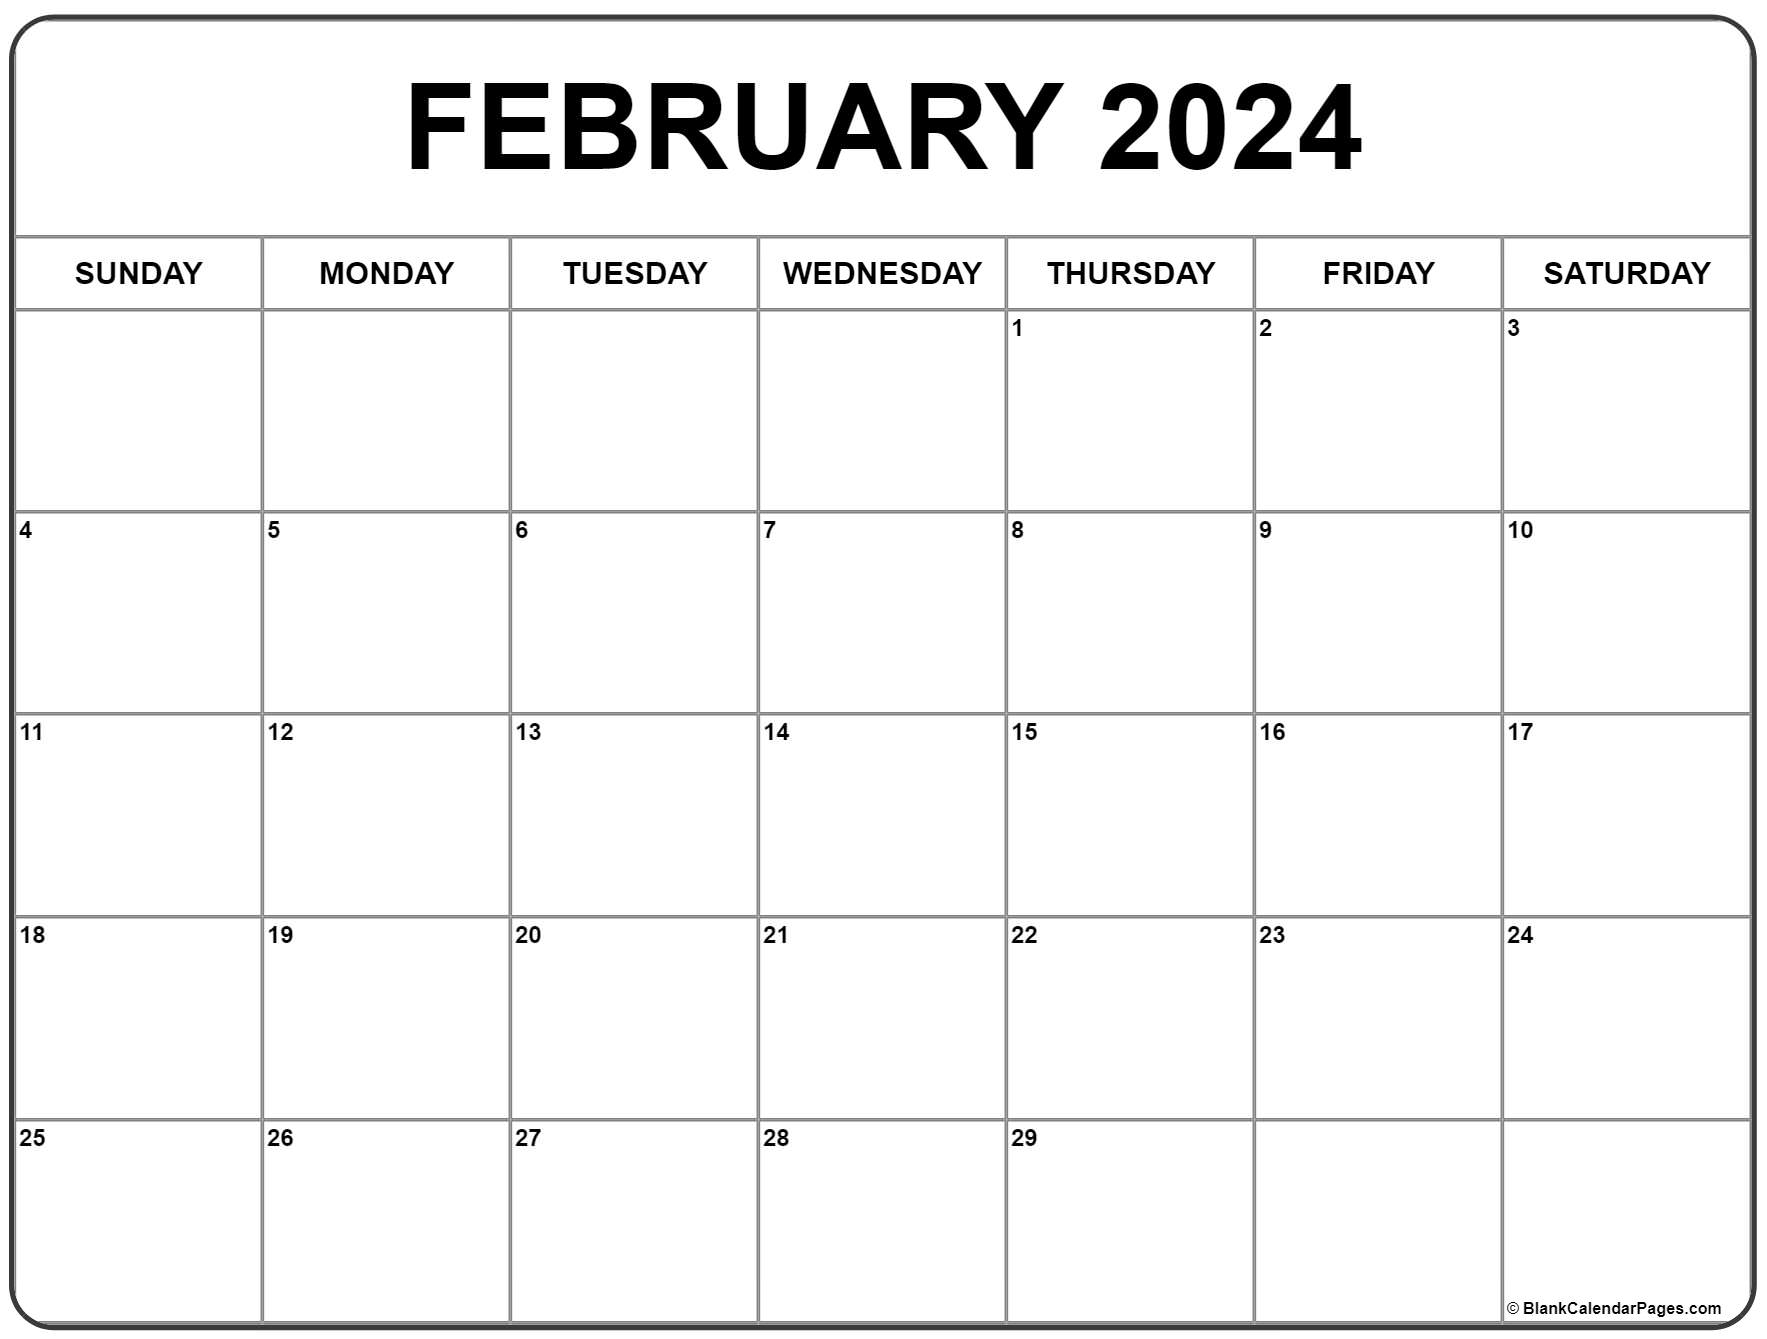 February 2024 Calendar | Free Printable Calendar for February 2024 Calendar Printable Free